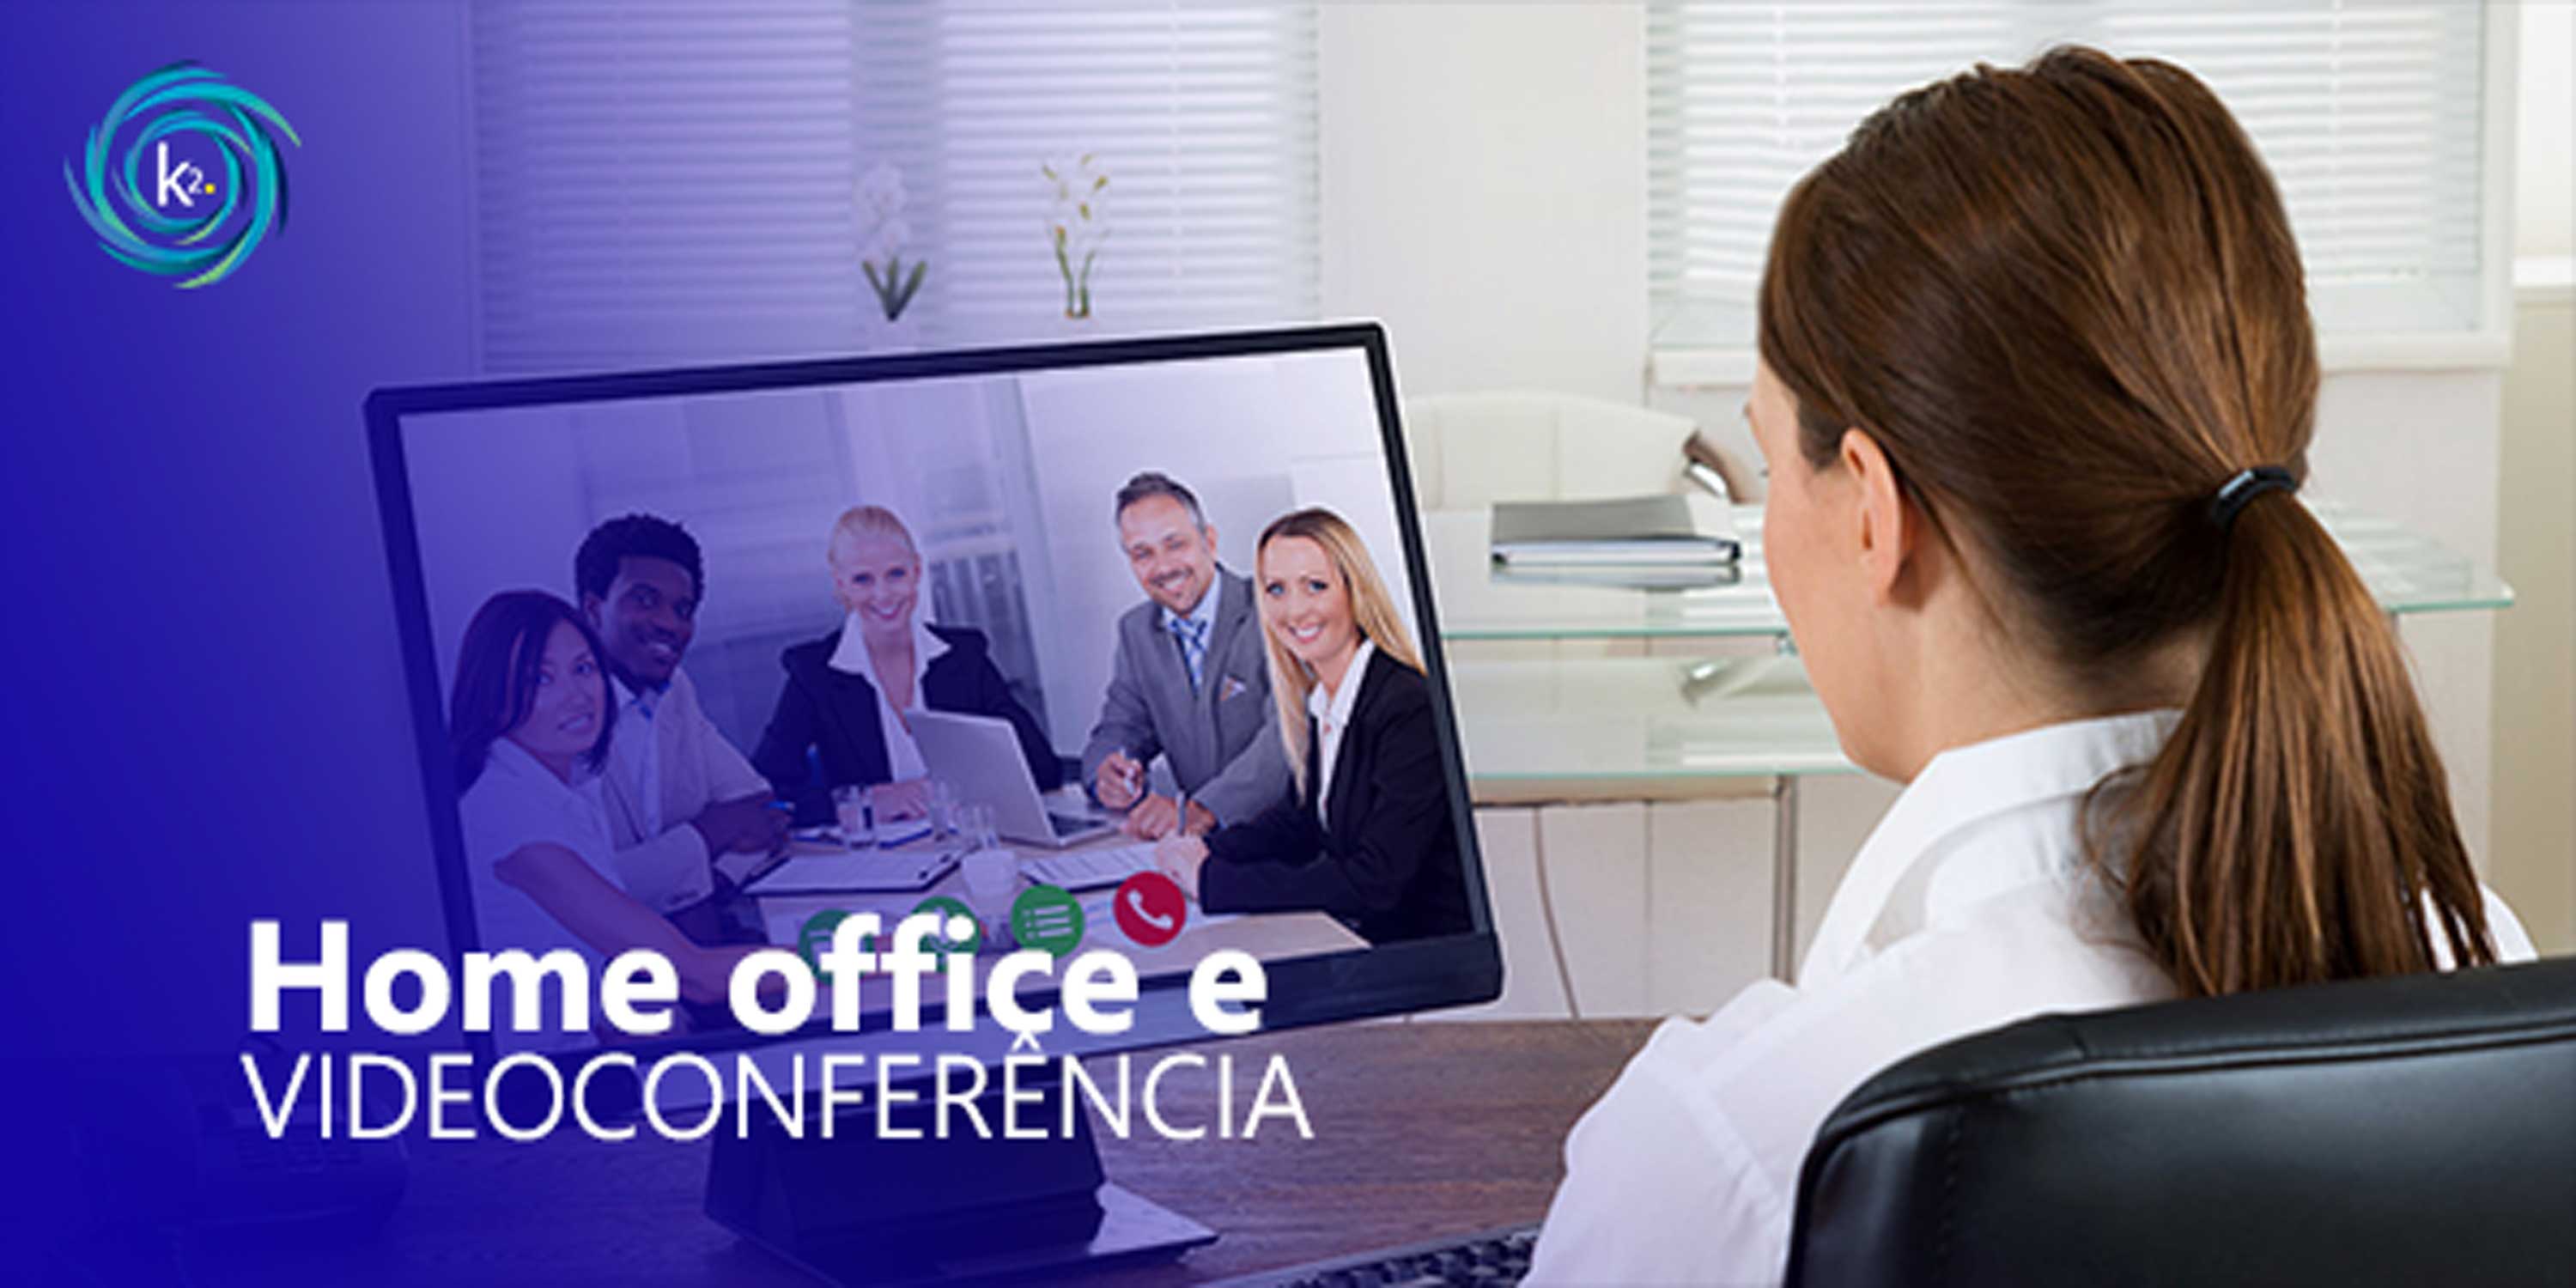 home office e videoconferência